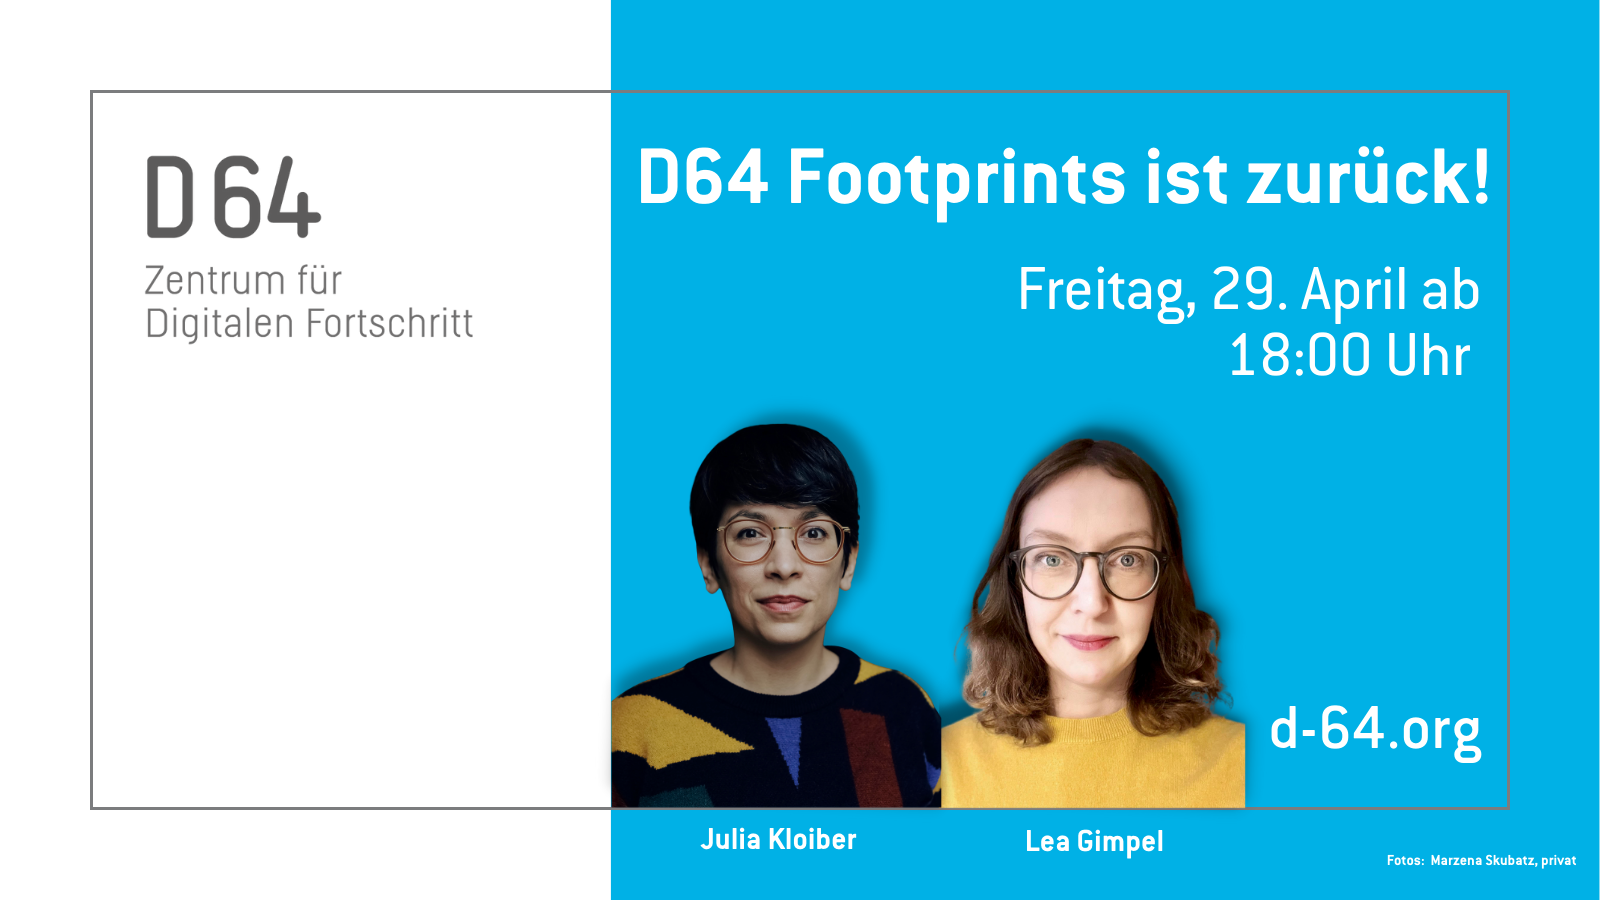 Sharepic von D64. Portraits von Julia Kloiber und Lea Gimpel. Im linken Drittel steht vor weißem Grund: "D64 Zentrum für Digitalen Fortschritt". In den rechten beiden Dritteln steht vor blauem Grund: "D64 Footprints ist zurück! Freitag, 29. April 18:00 d-64.org"